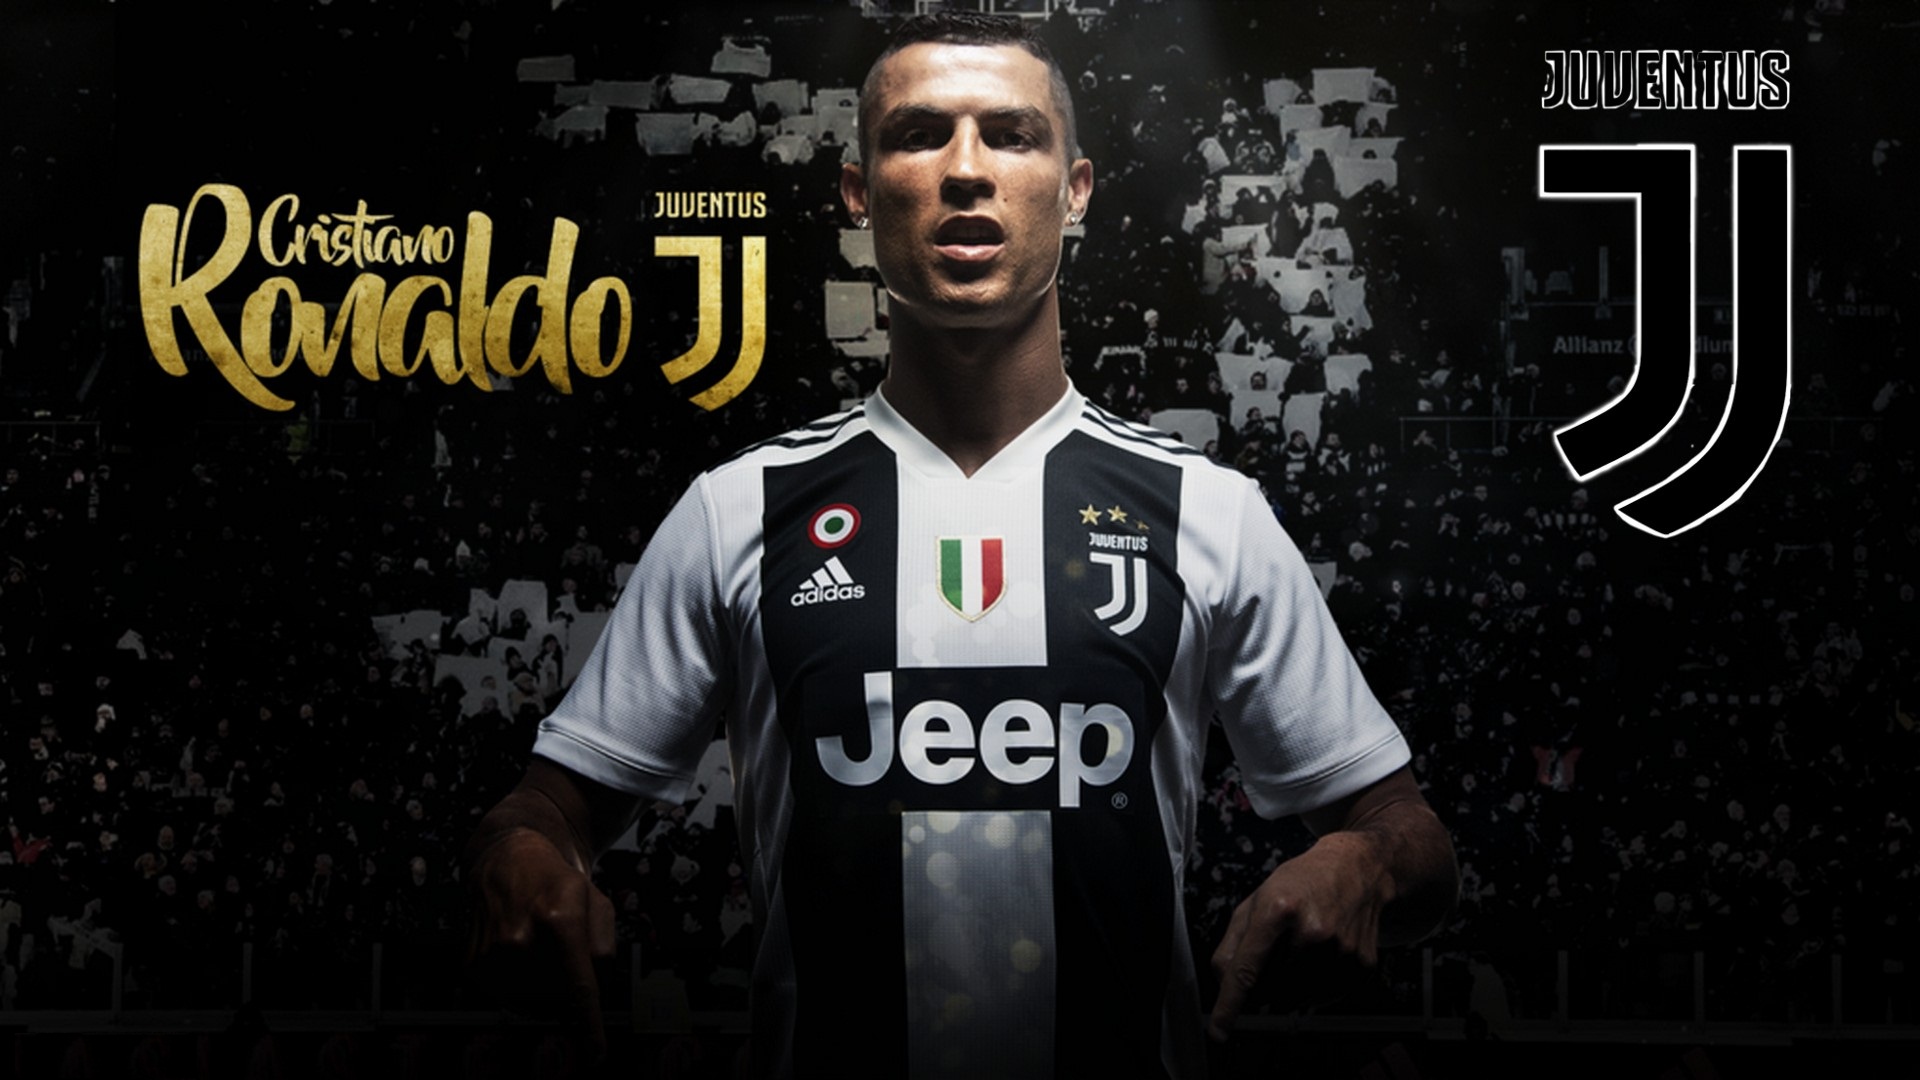 Hình nền Ronaldo Juventus là điều tuyệt vời để giúp bạn kết nối với đội bóng thành Turin. Trải nghiệm khoảnh khắc đầy phấn khích với Ronaldo và các cầu thủ Juventus khác trong chiến thắng lịch sử. Hãy tải hình nền đẹp này ngay để thể hiện sự yêu thích của bạn!